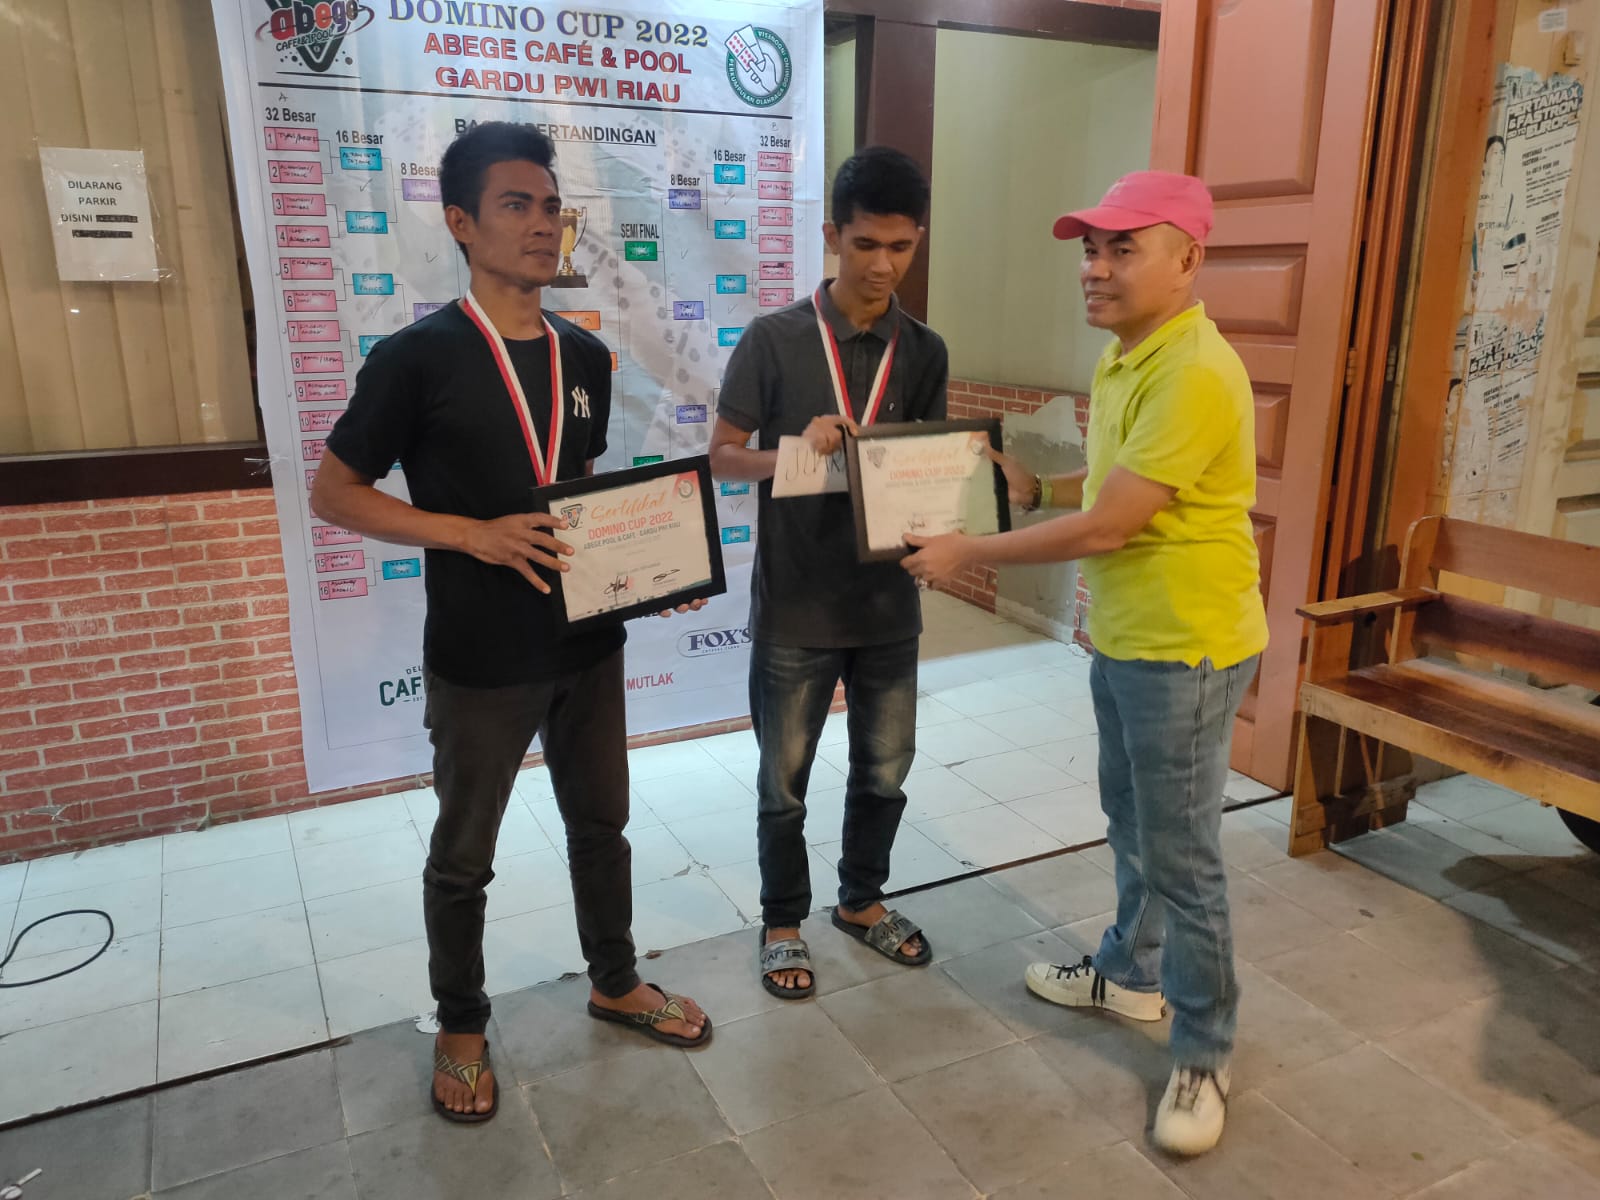 Domino Cup 2022 Abege Cafe Pool-Gardu PWI Riau, Edo Saputra dan Andra Raih Medali Emas